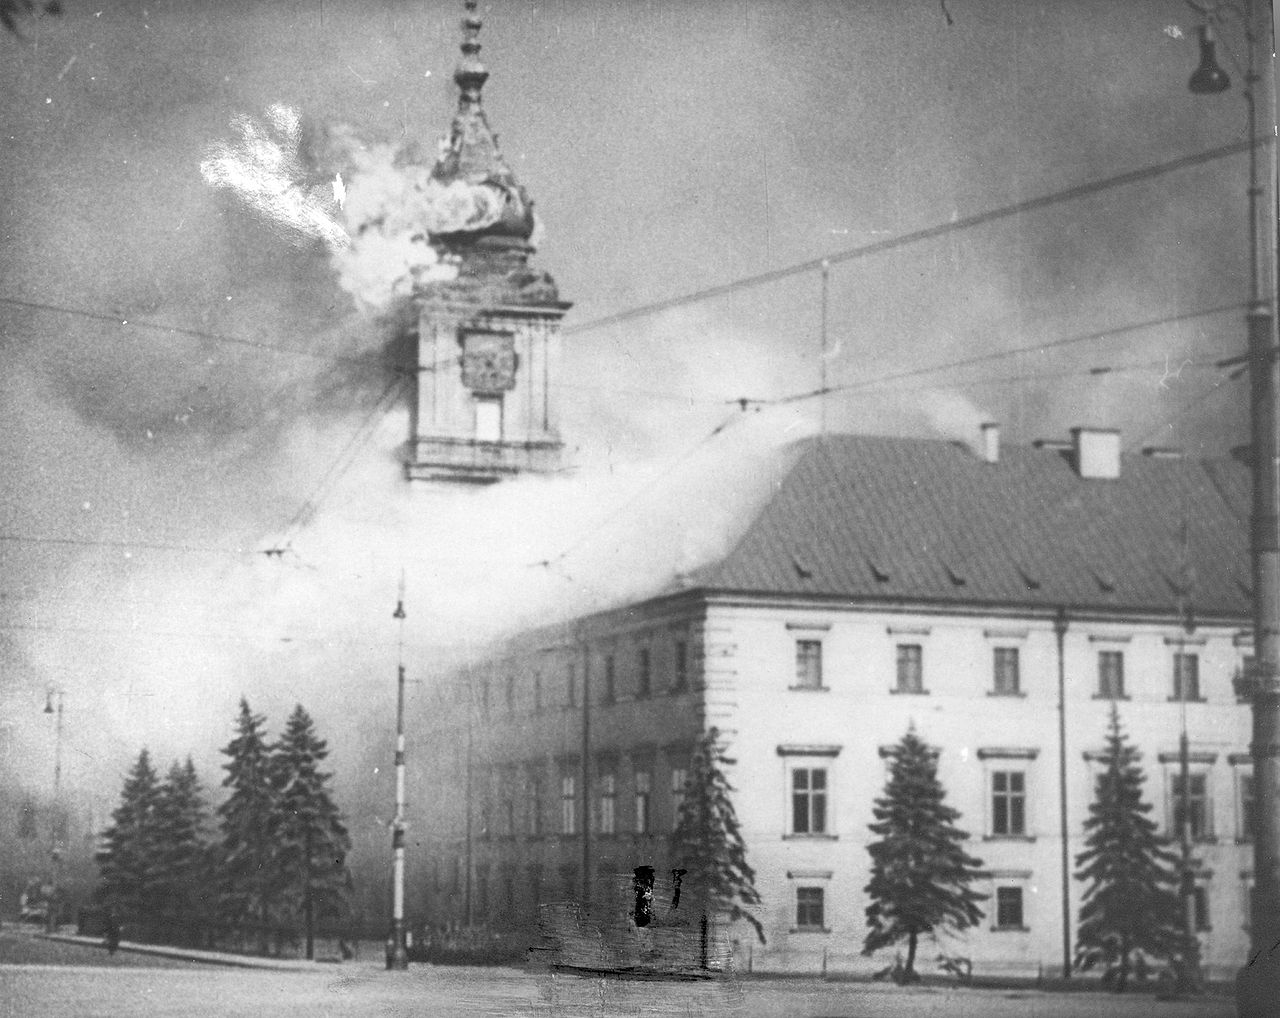 1939: Hitler Invades Poland